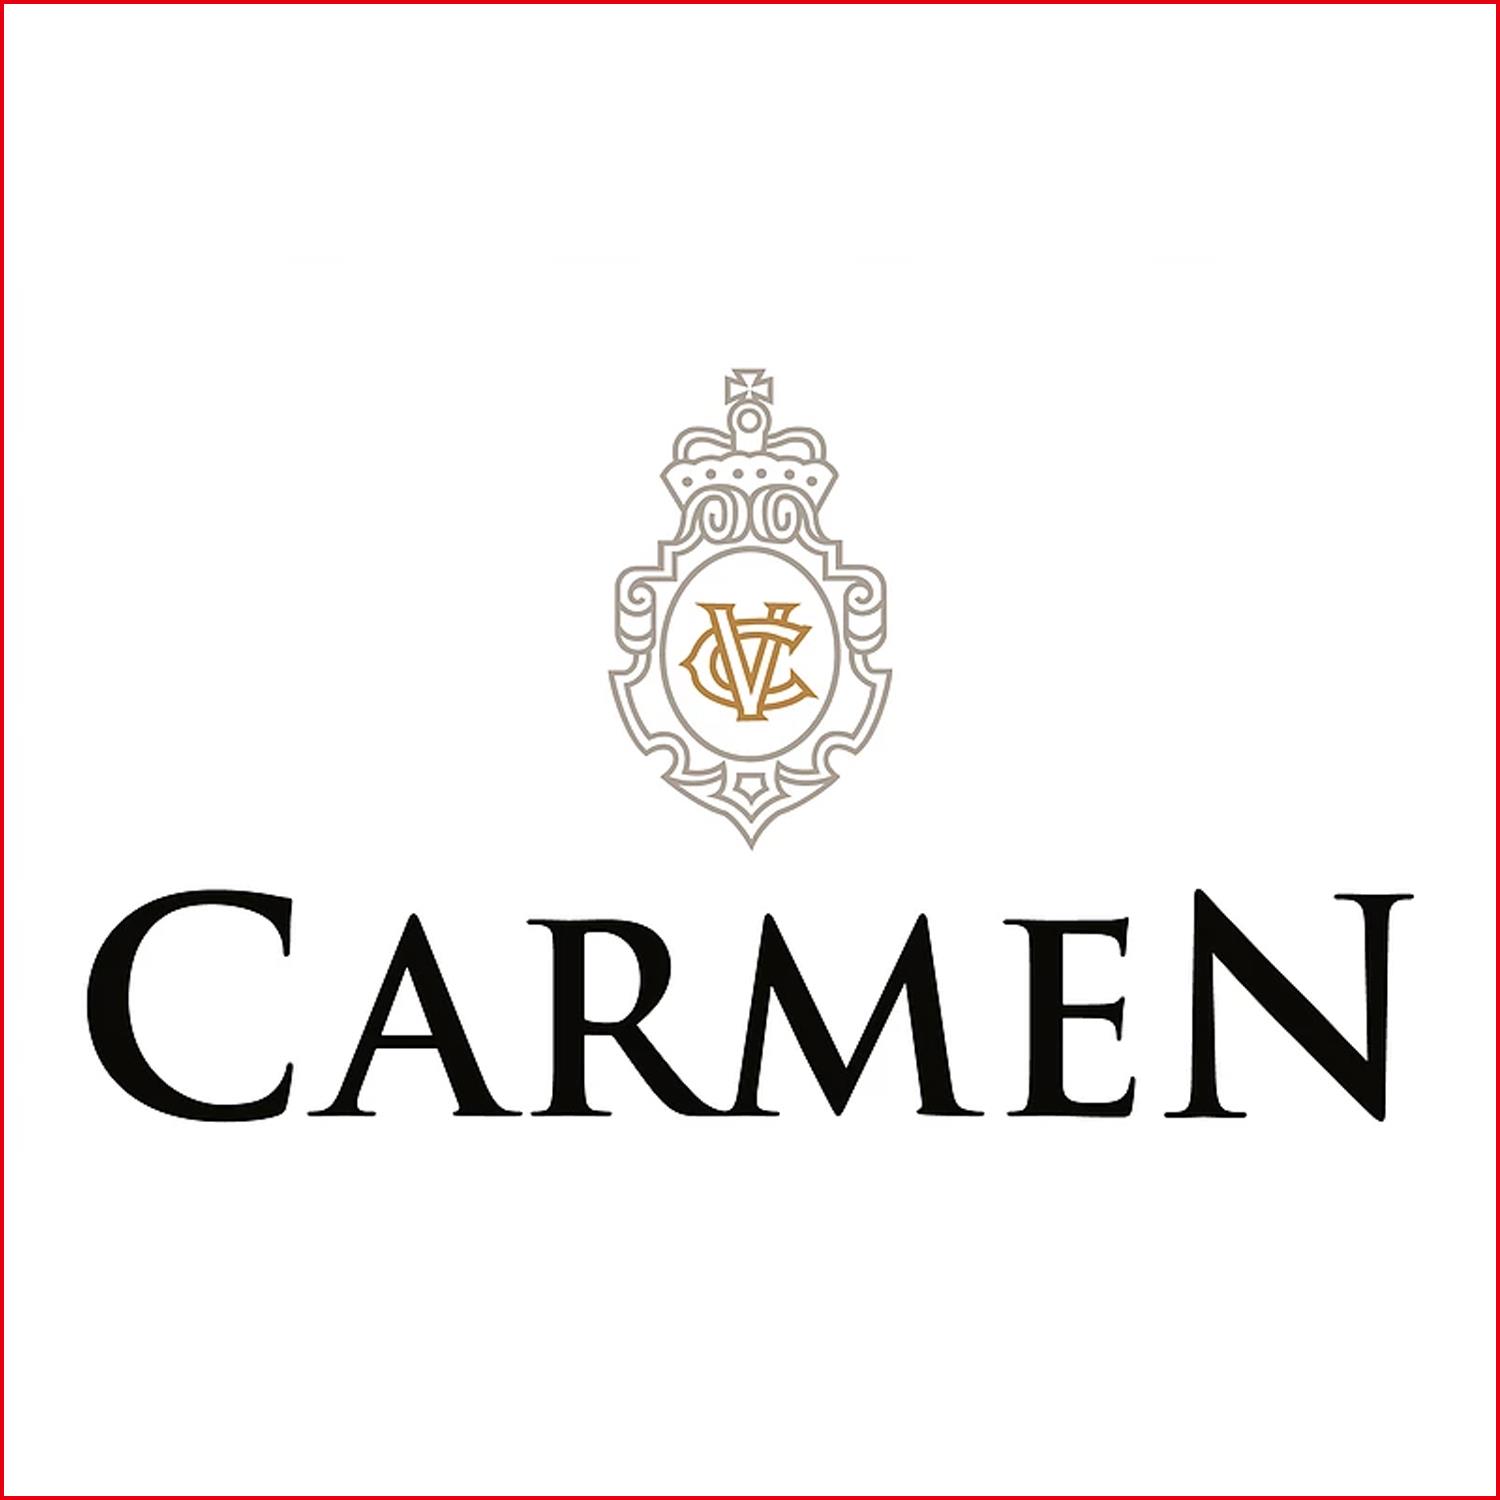 卡門酒莊 Carmen